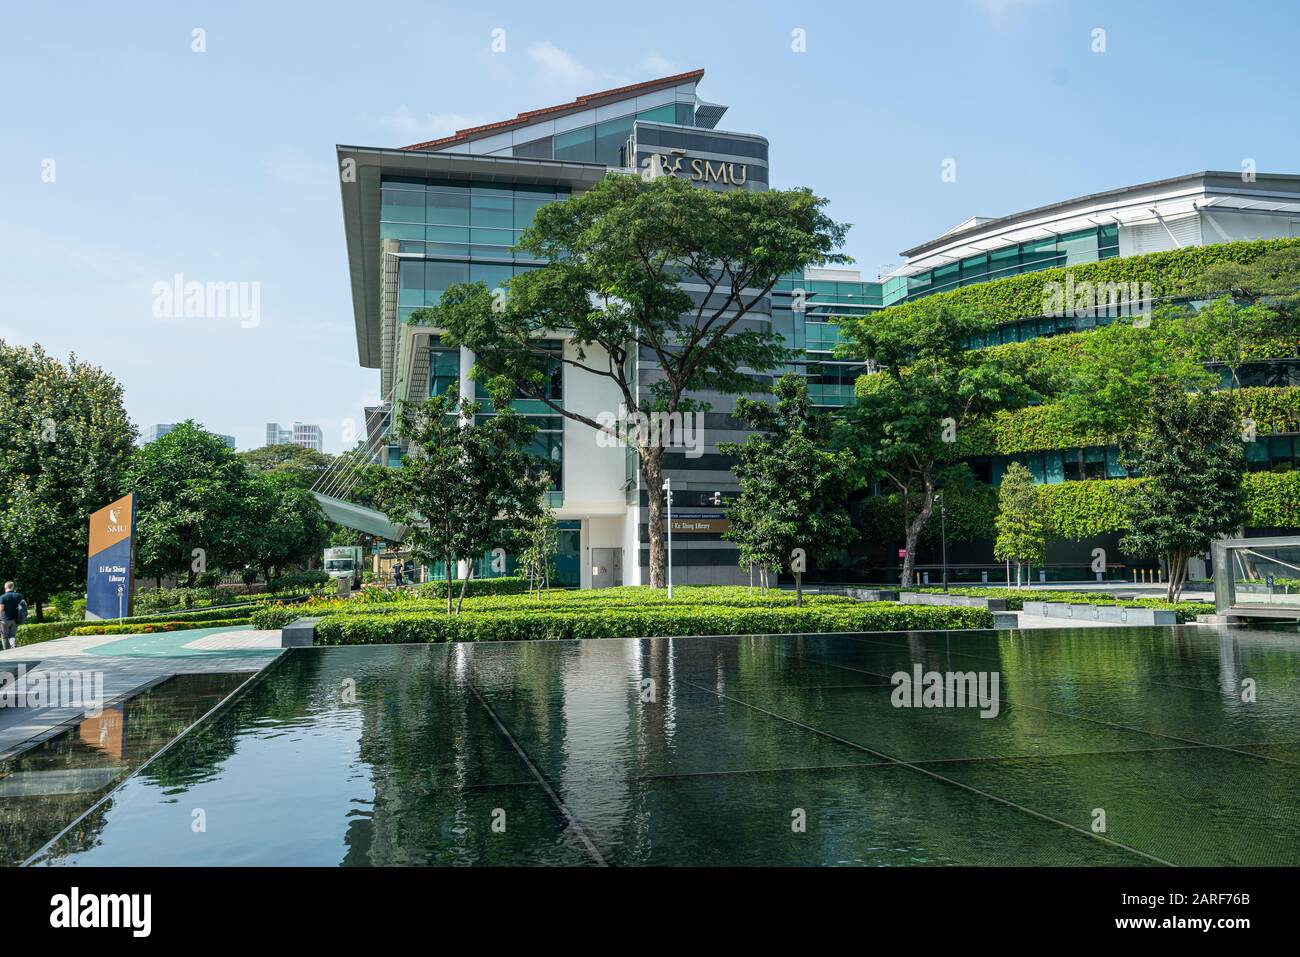 Singapore. Gennaio 2020. Vista esterna dell'edificio della Biblioteca li Ka Shing della Singapore Management University Foto Stock